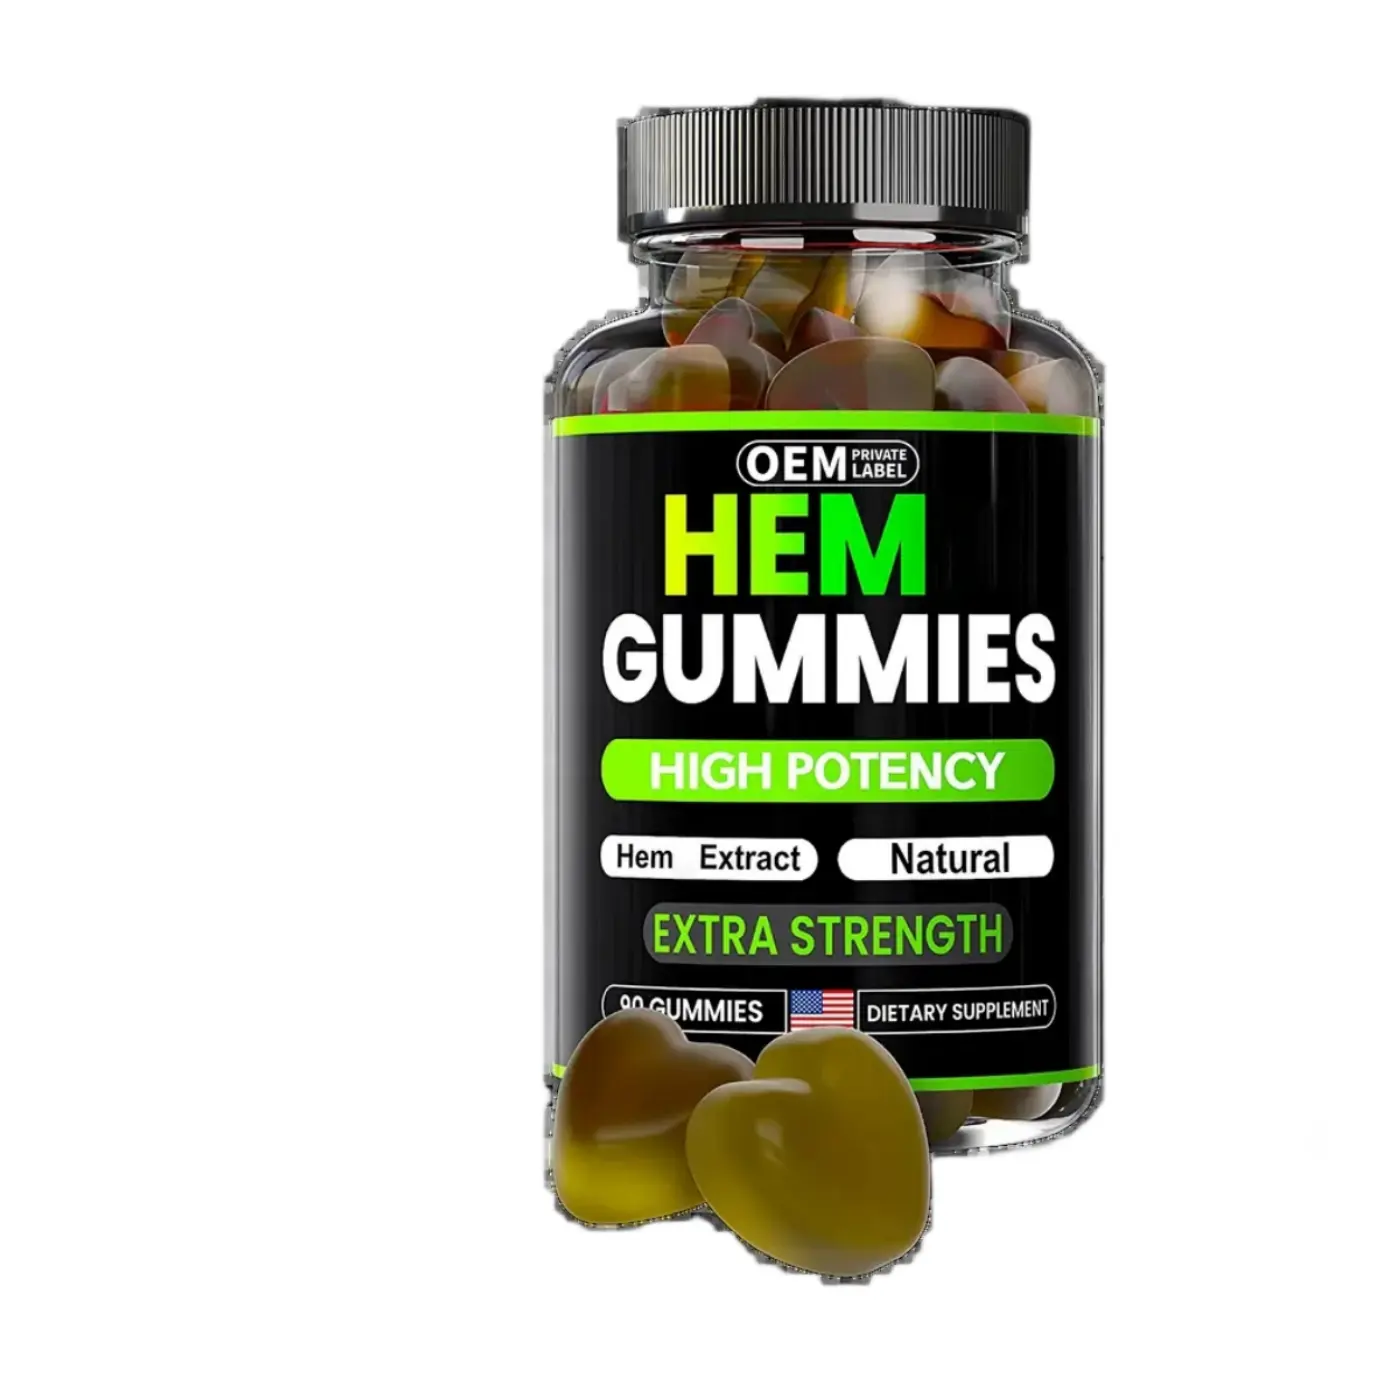 OEM Private Label Premium Hem Gummies 15000000 mg Schlaf Hochwirksame Nahrungs ergänzungs mittel für erholsame Nächte